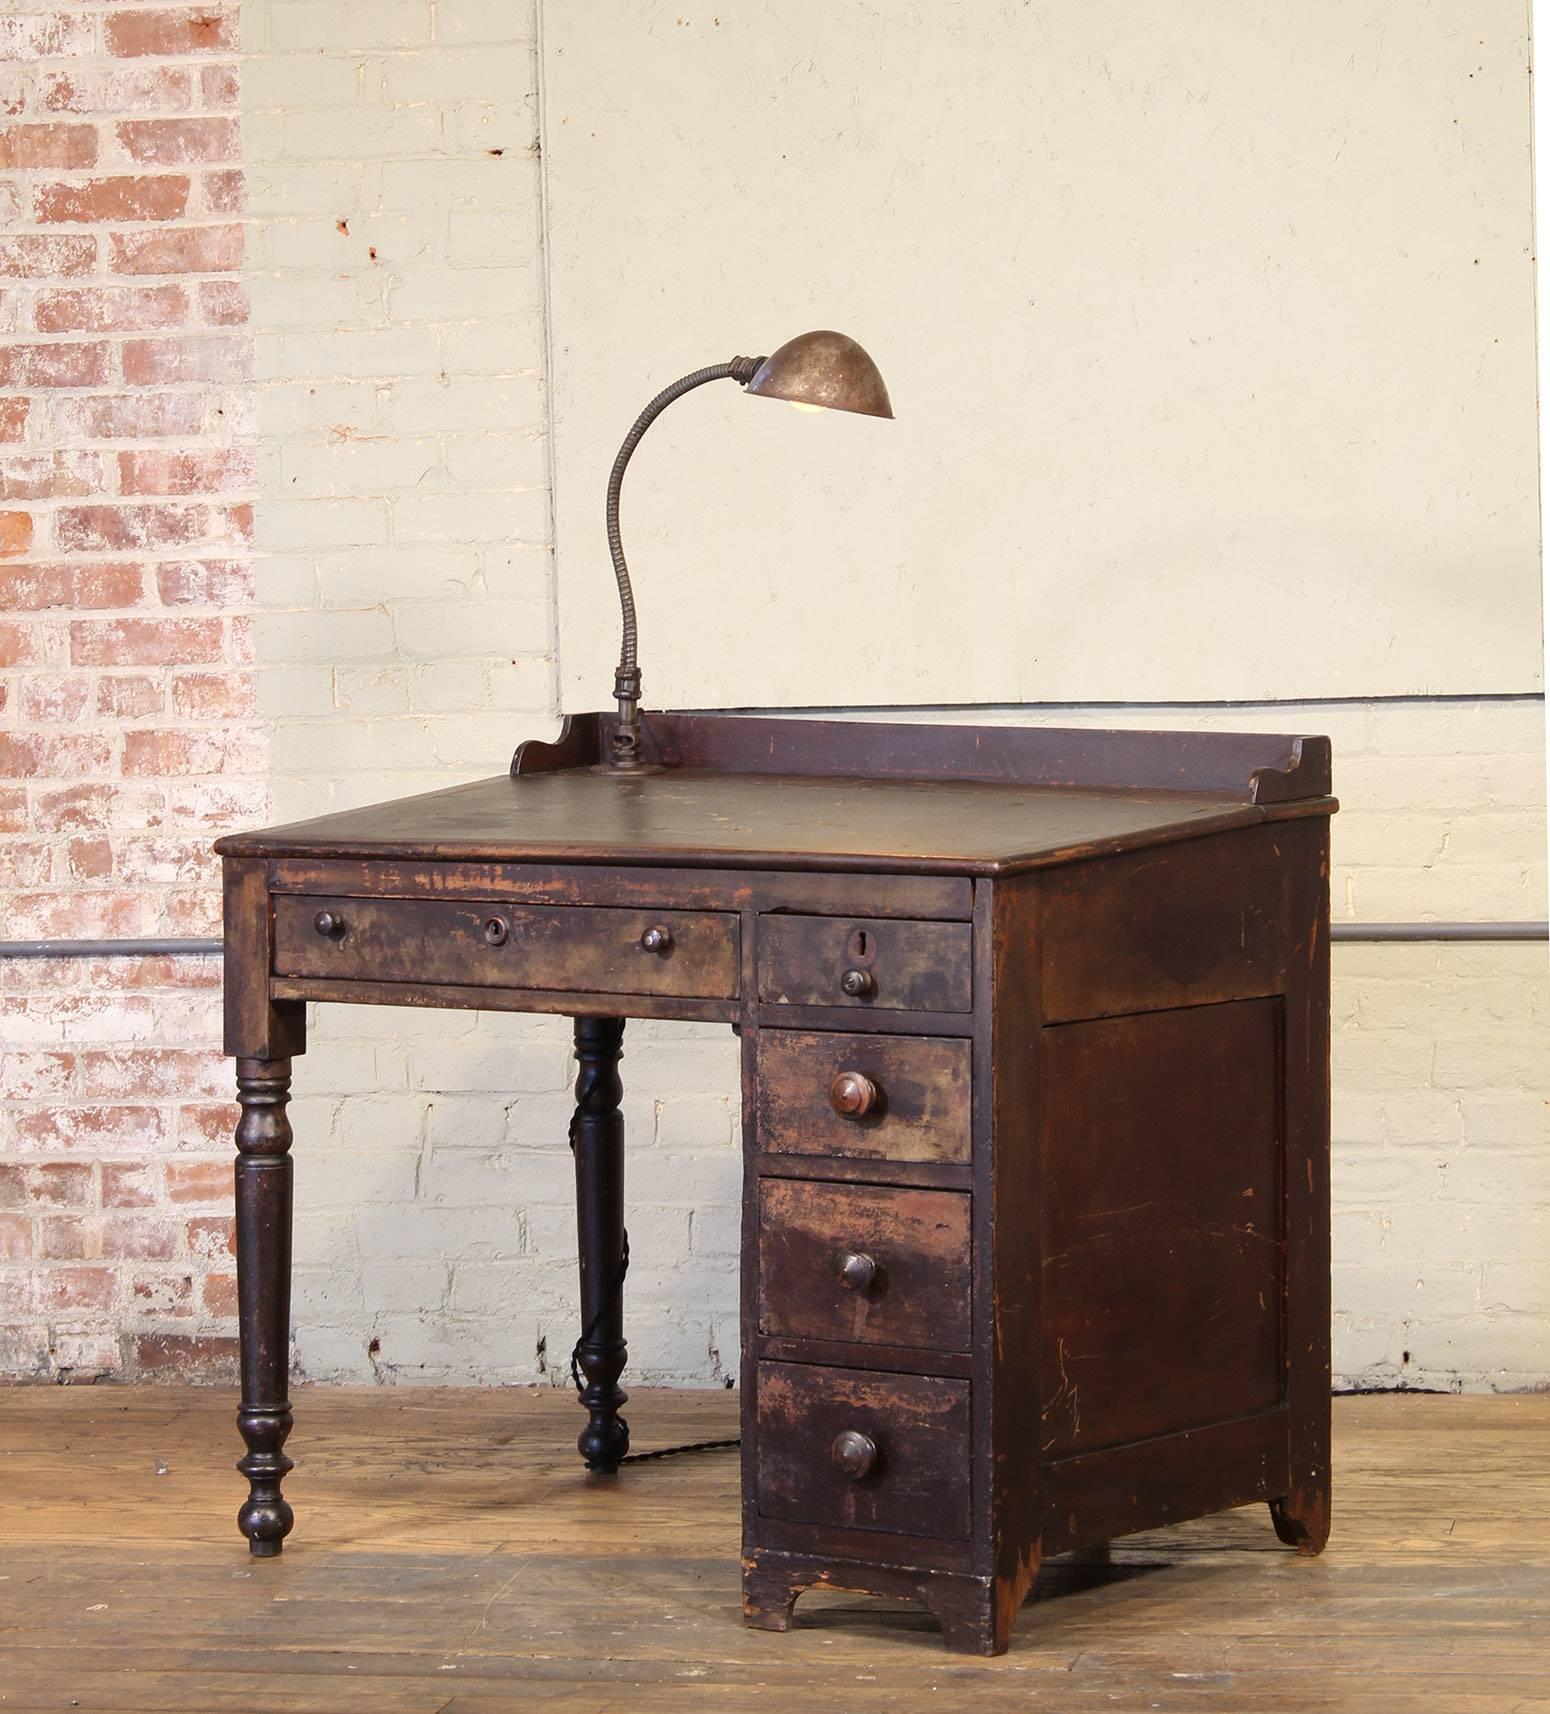 Vintage Industrial Clerk's Desk with Adjustable Task-Light (Industriell)